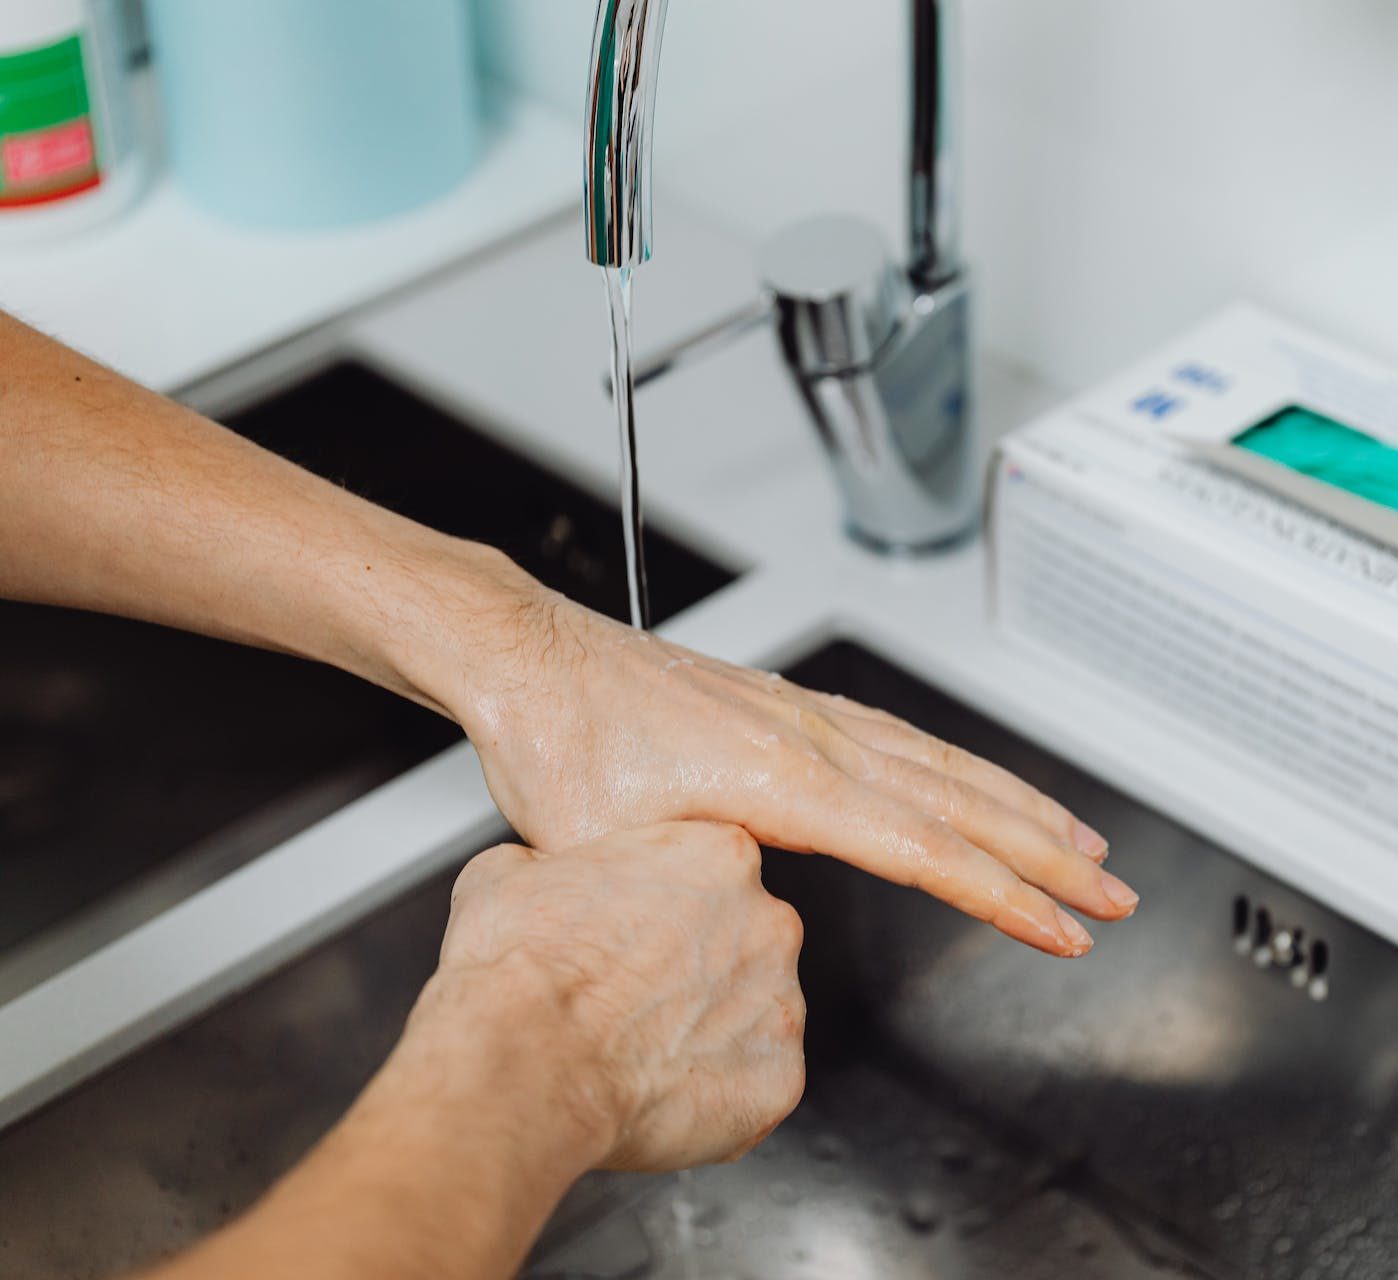 Una correcta limpieza de las manos por parte de los médicos y enfermeros es fundamental para evitar posibles infecciones o la propagación de hongos u otros microorganismos. Foto: Karolina Grabowska/Pexels.